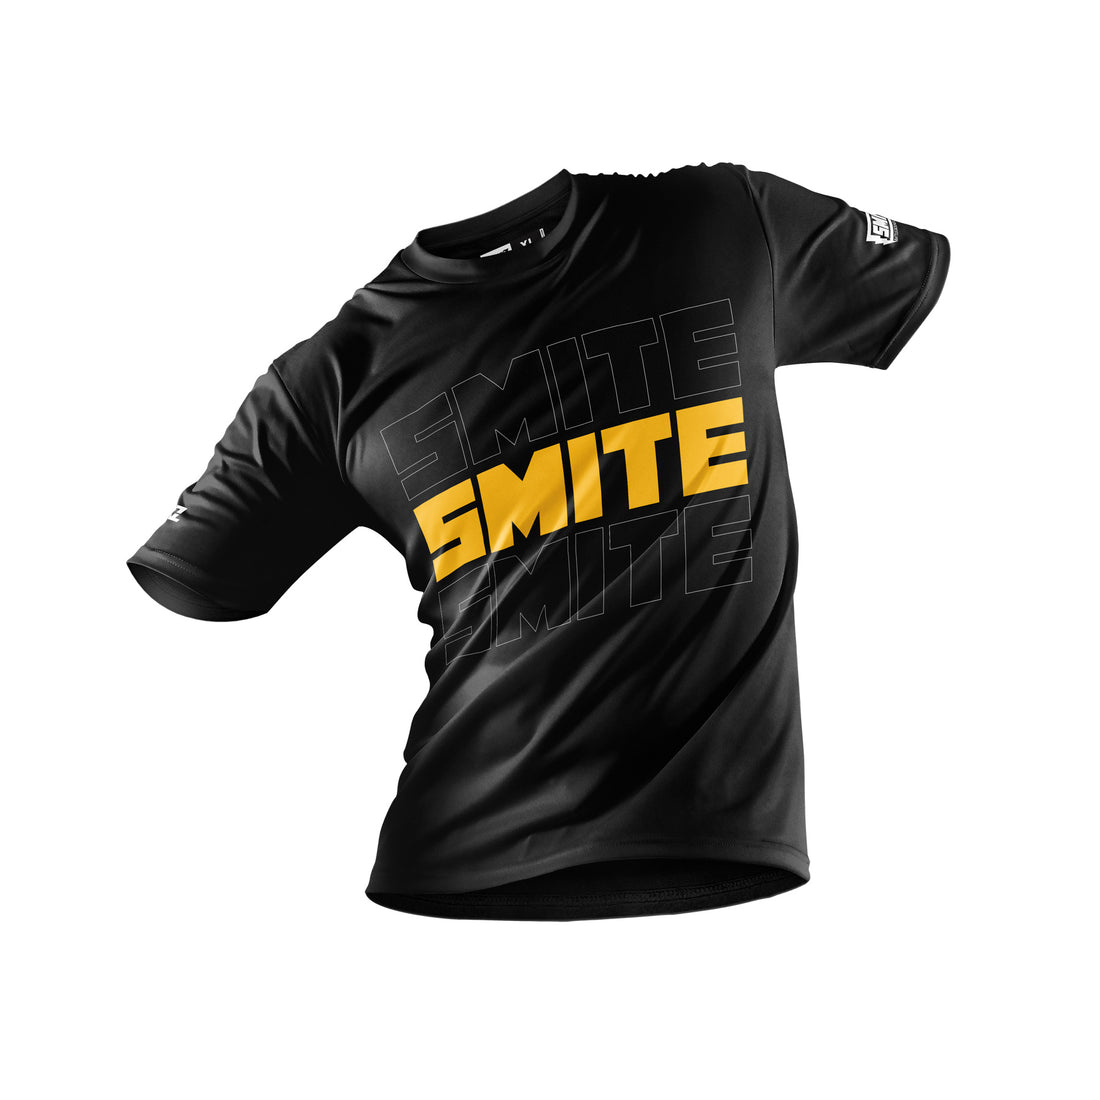 SMITE Echo Shirt